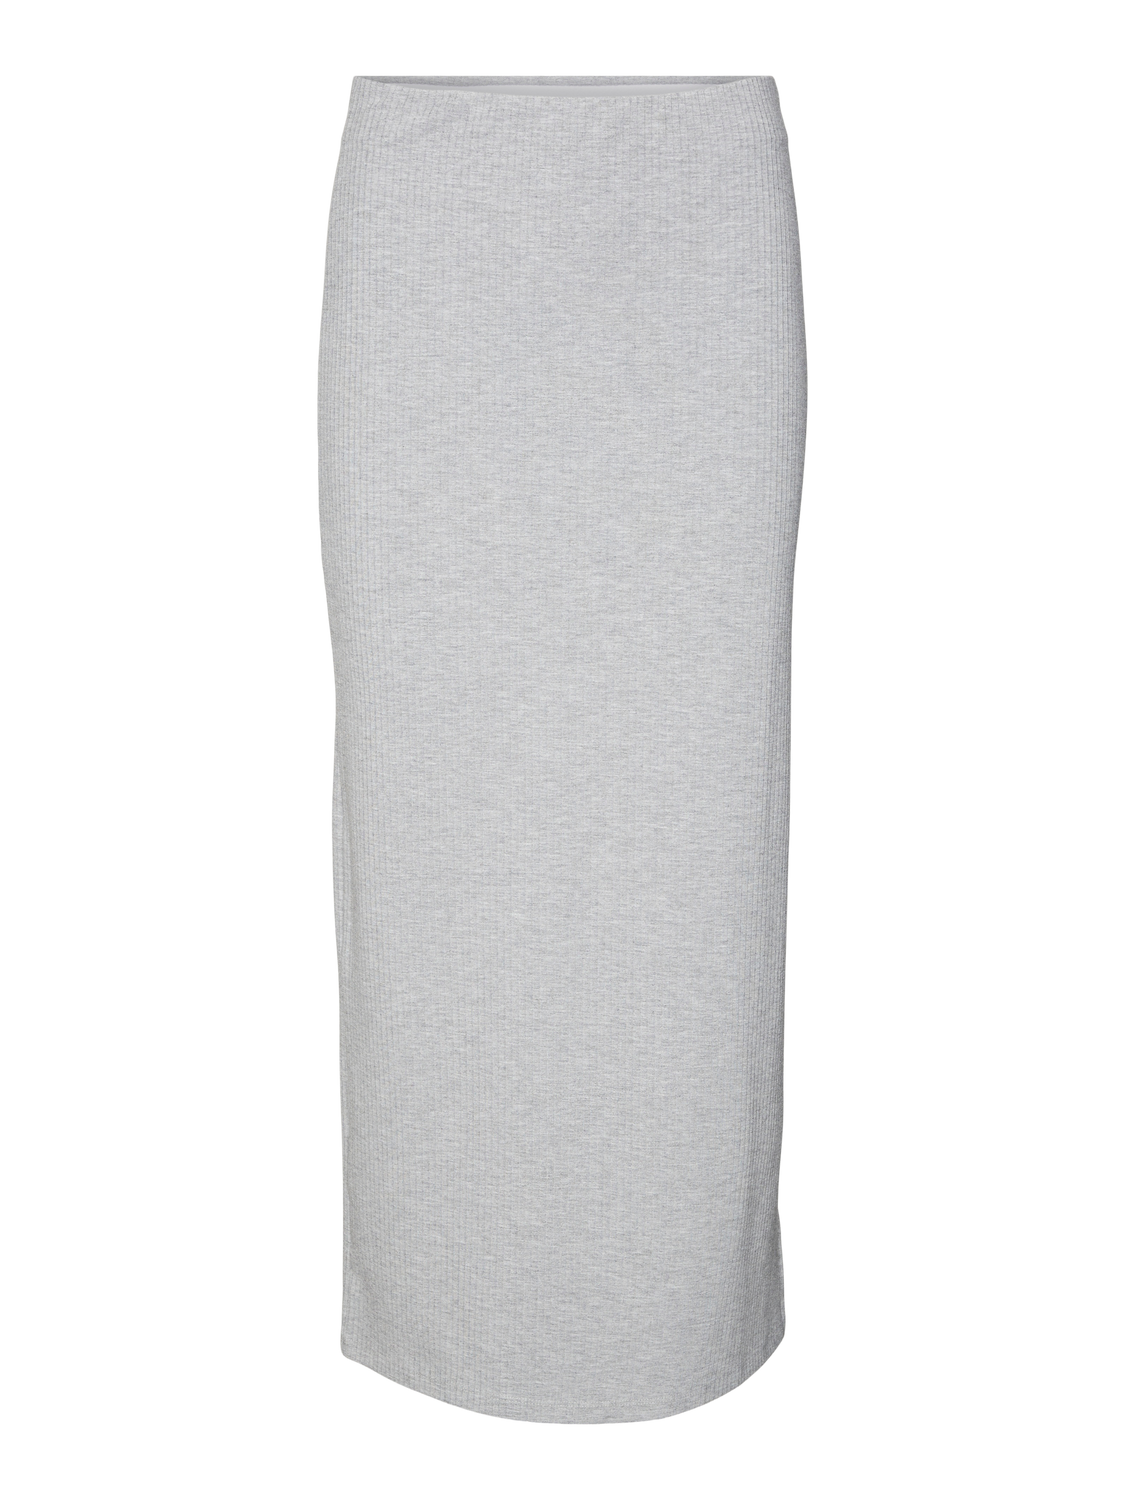 VMMARY Skirt - Light Grey Melange